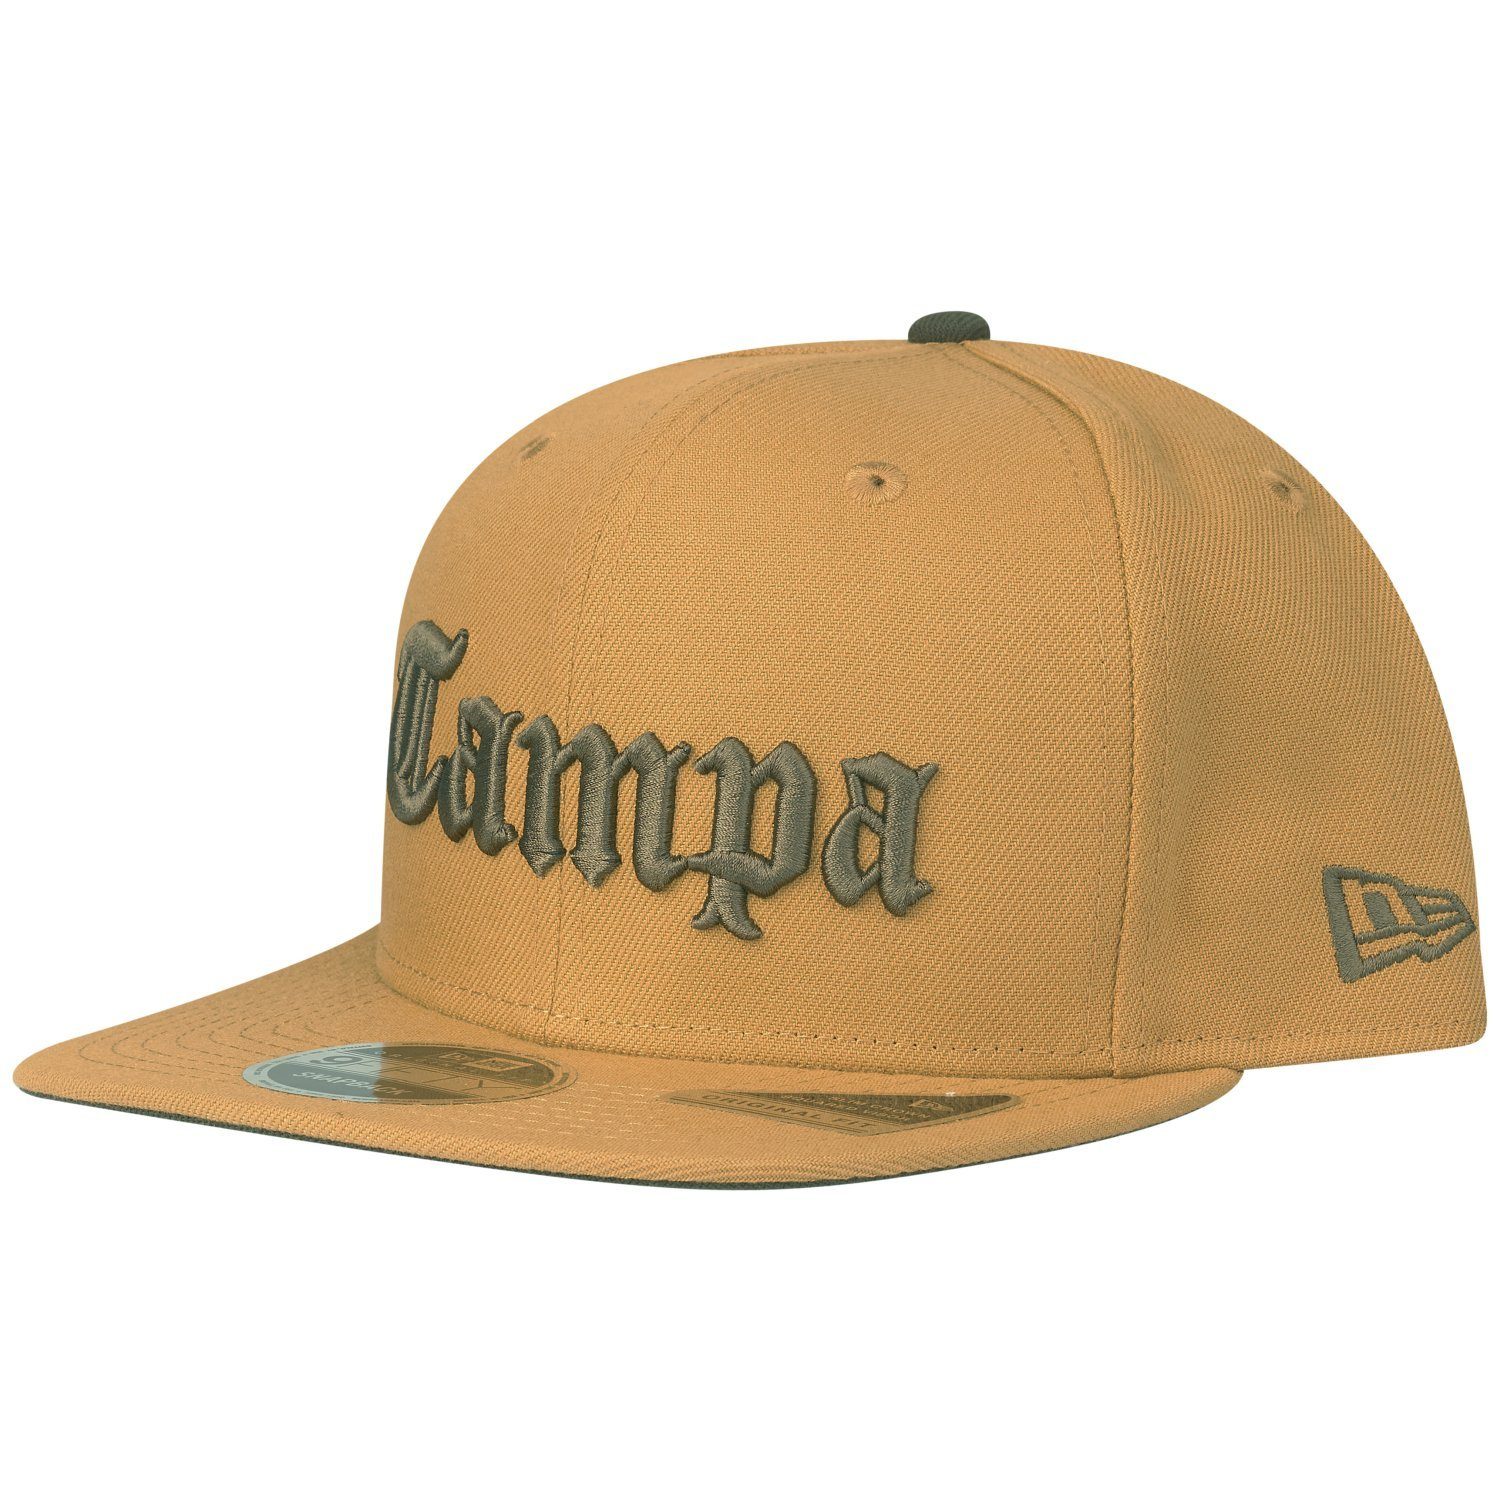 New Era Snapback Cap OriginalFit TAMPA FLY panama